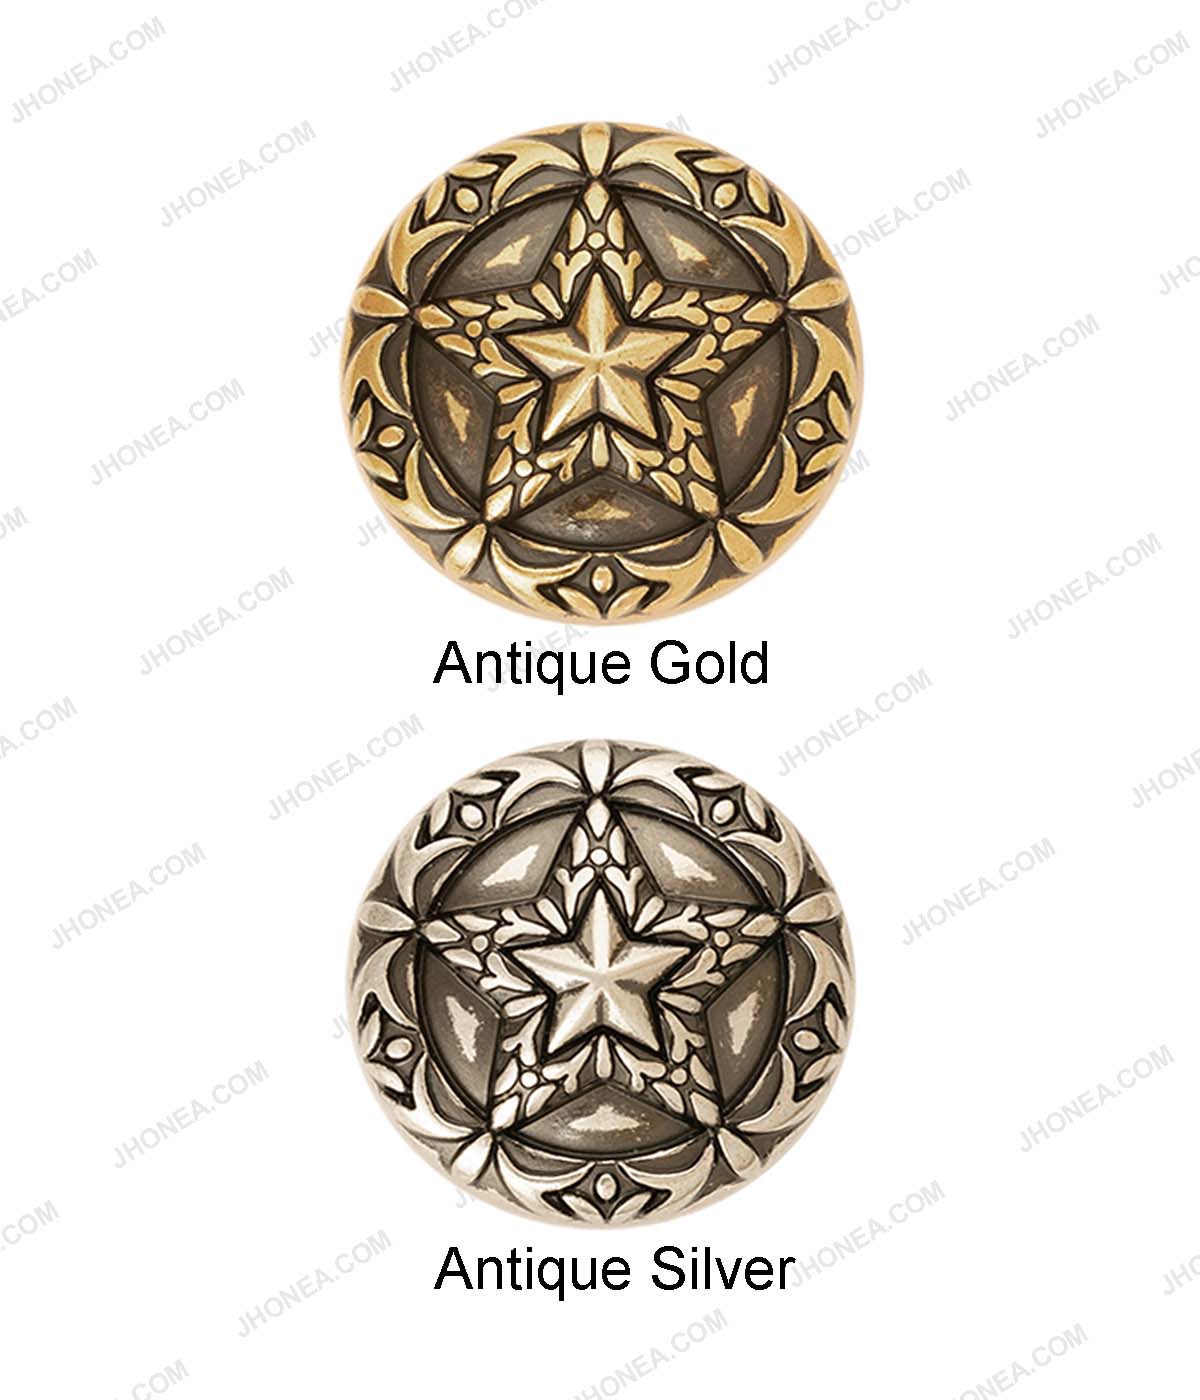 Premium Antique Vintage Star Design Metal Buttons for Coats